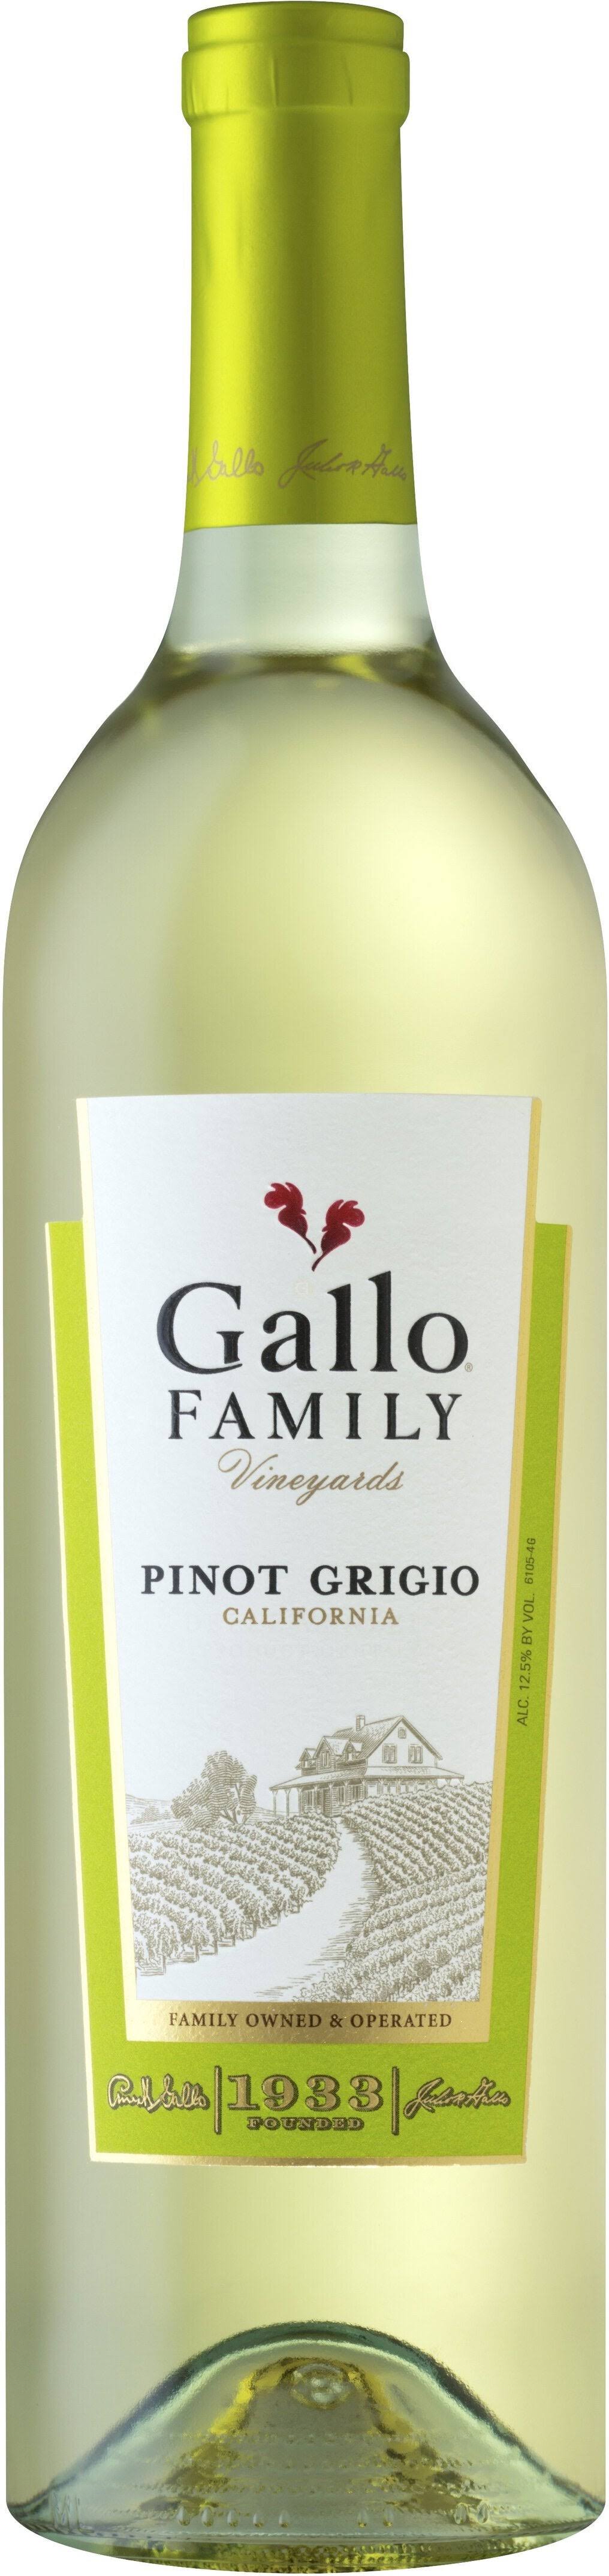 Gallo Family Pinot Grigio, California - 750 ml